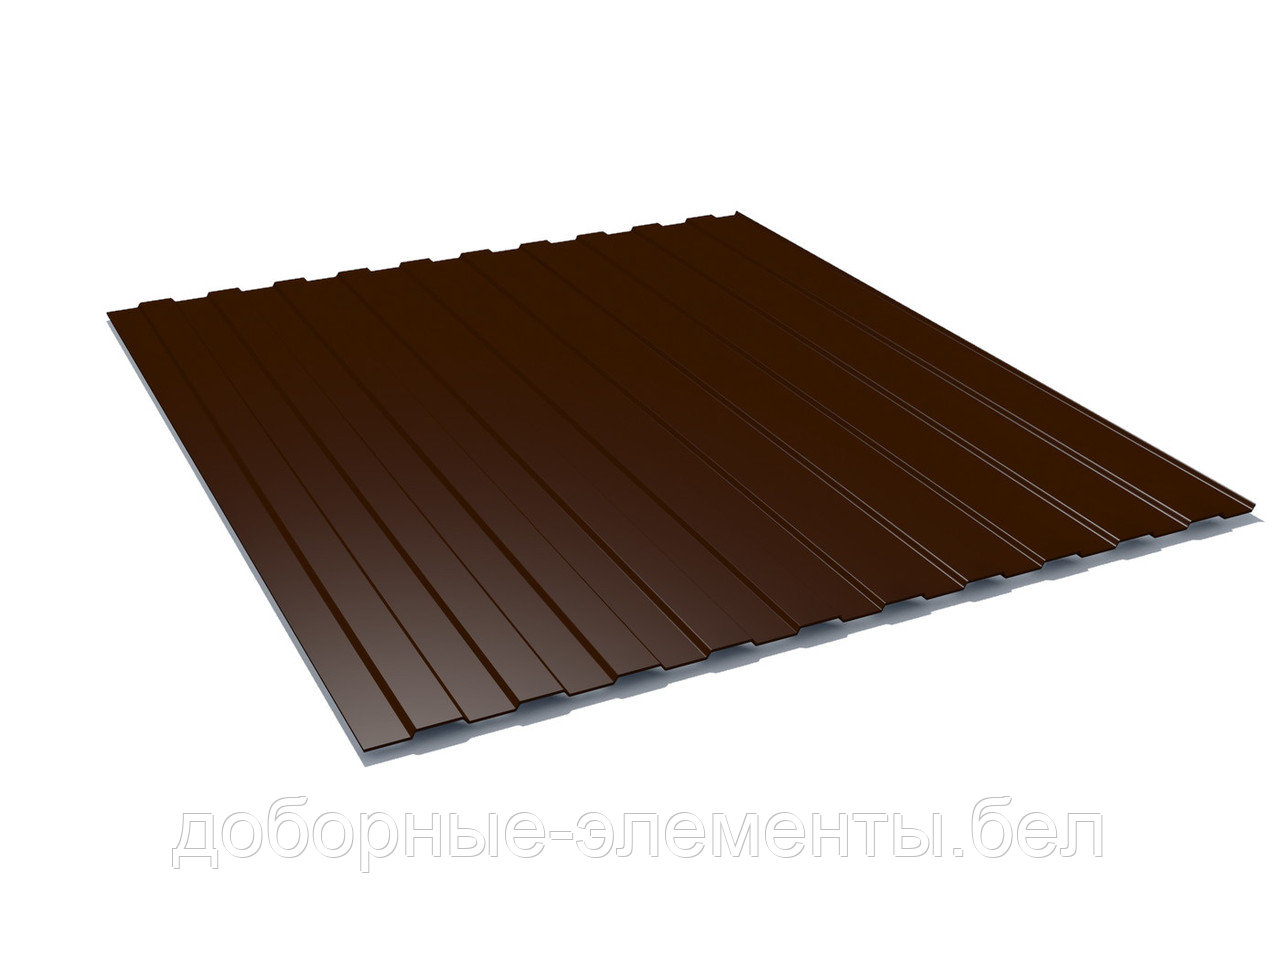 Профлист С8 для забора 1,85 м (шоколадно-коричневый), фото 1